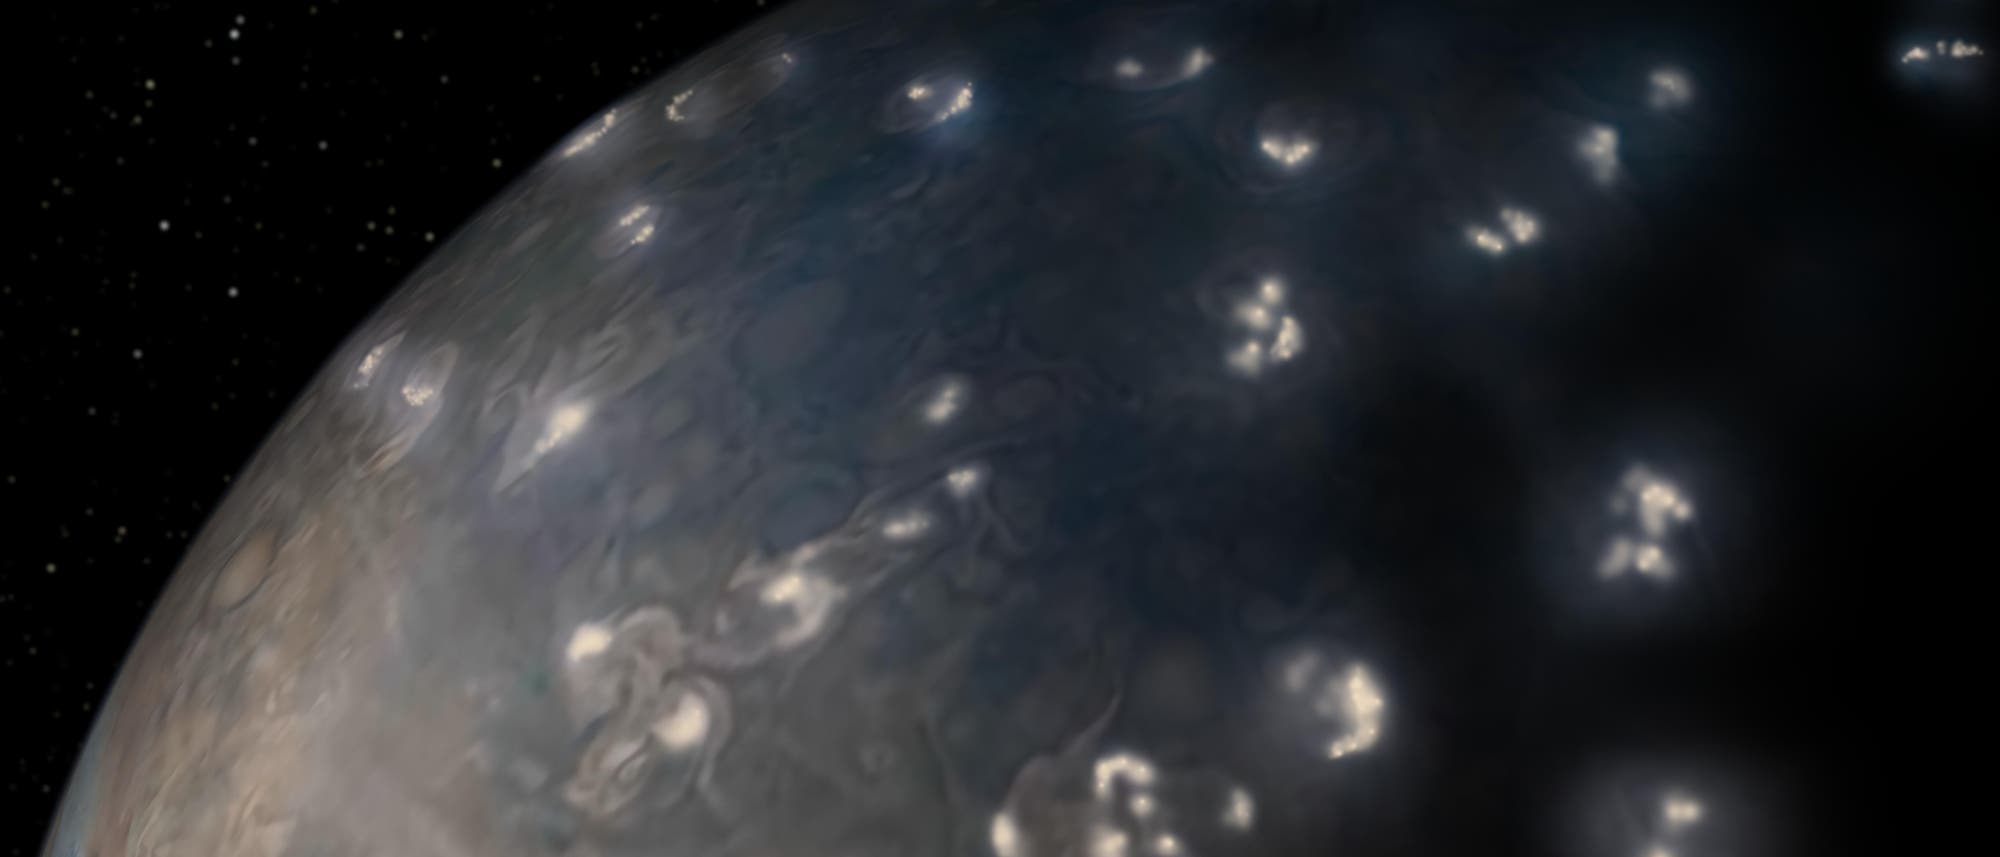 Ein Quadrant von Jupiter mit angedeuteten Unwettern und Blitzen.